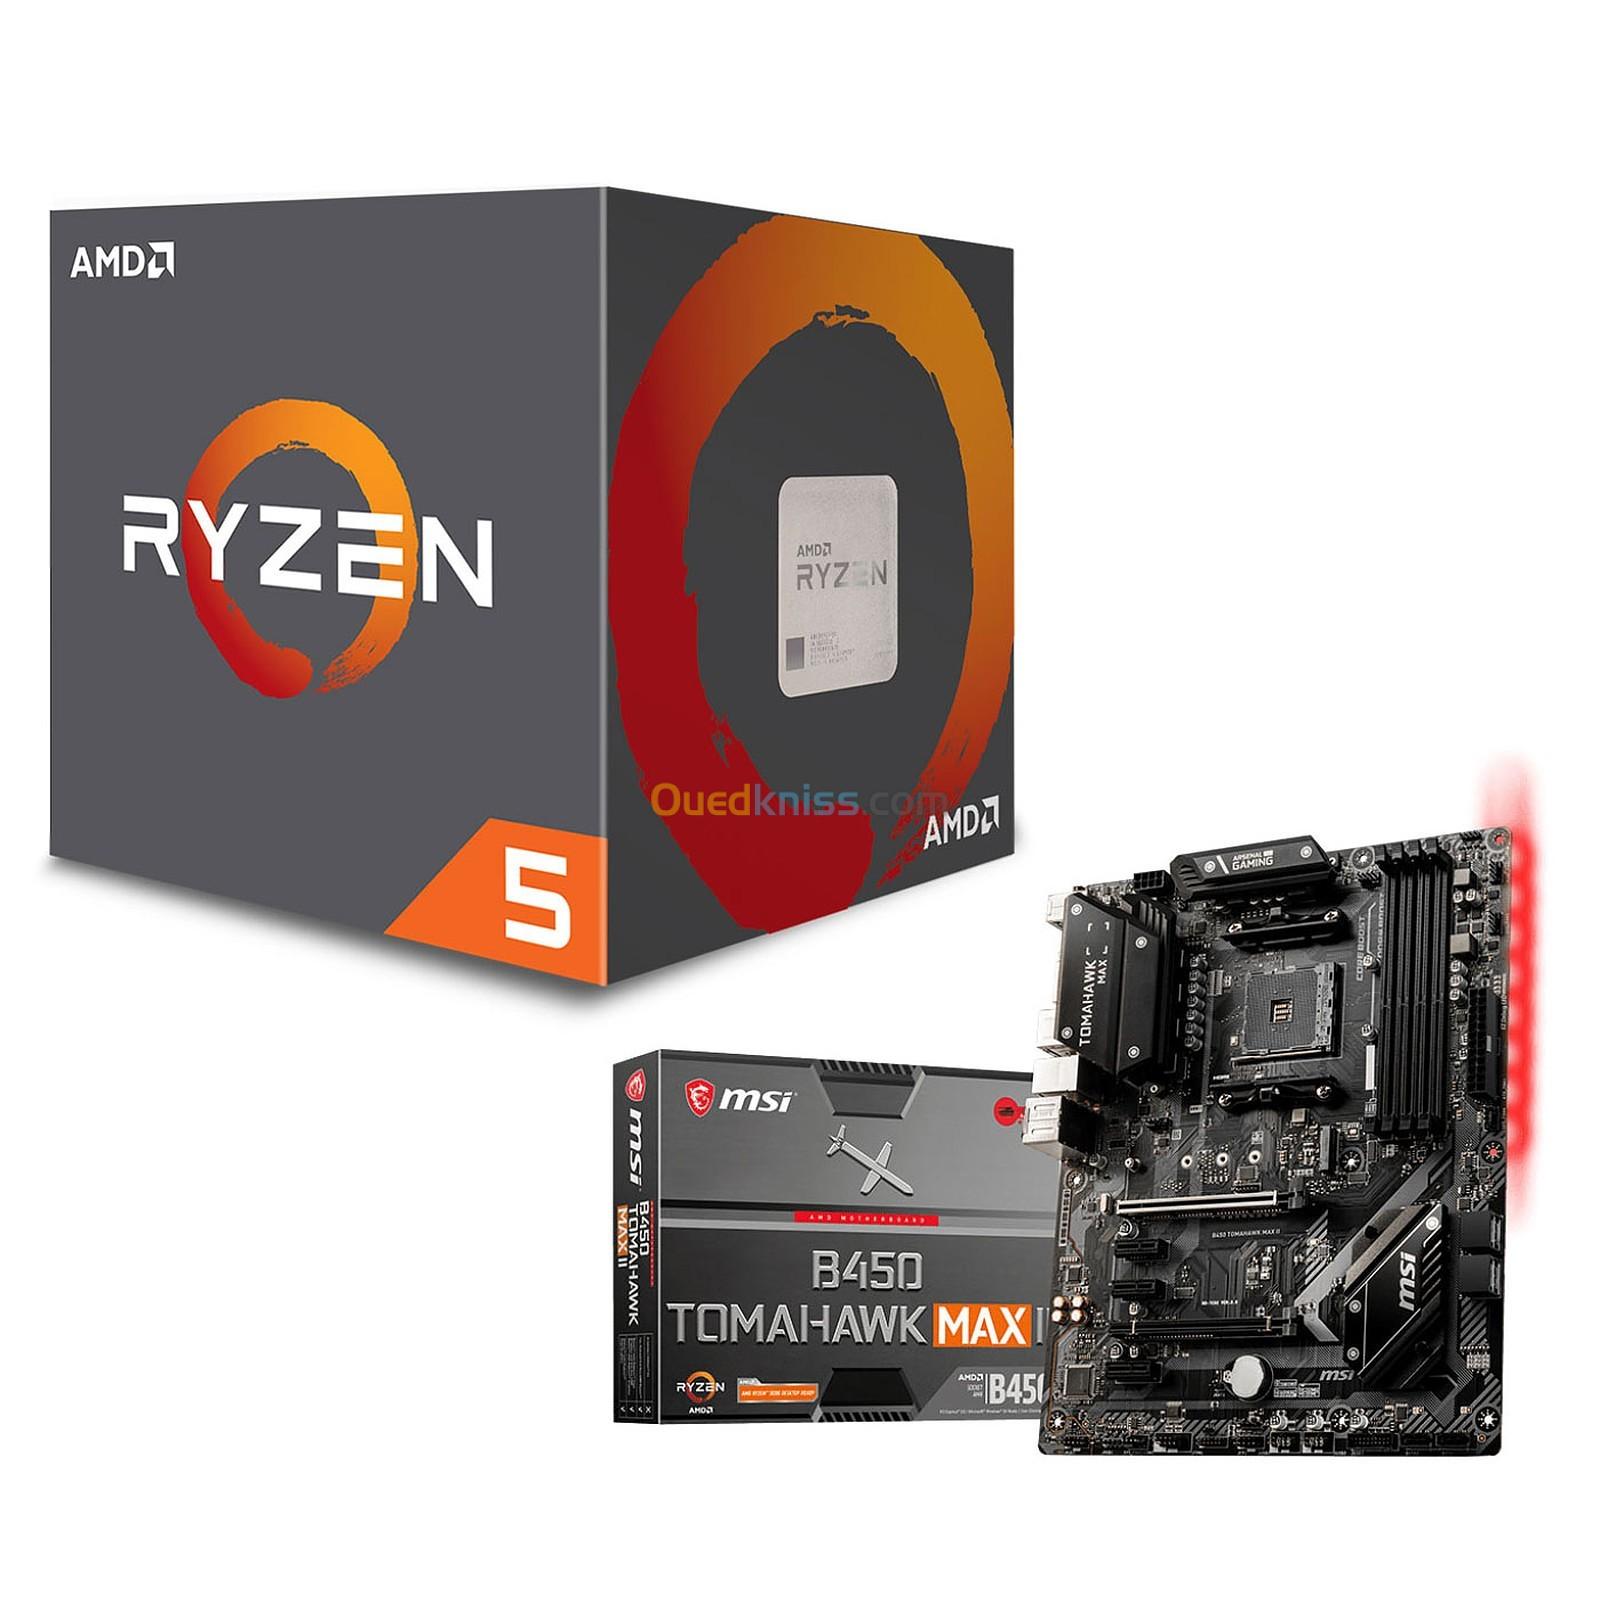 3年保証 即日出荷 ADMI CPU Motherboard Bundle: AMD Ryzen 2600X CPU Six Core  4.2GHz CPU, ASUS Prime A320M-K Motherboard, 8GB 2400Mhz DDR4 RAM 並行輸入品 